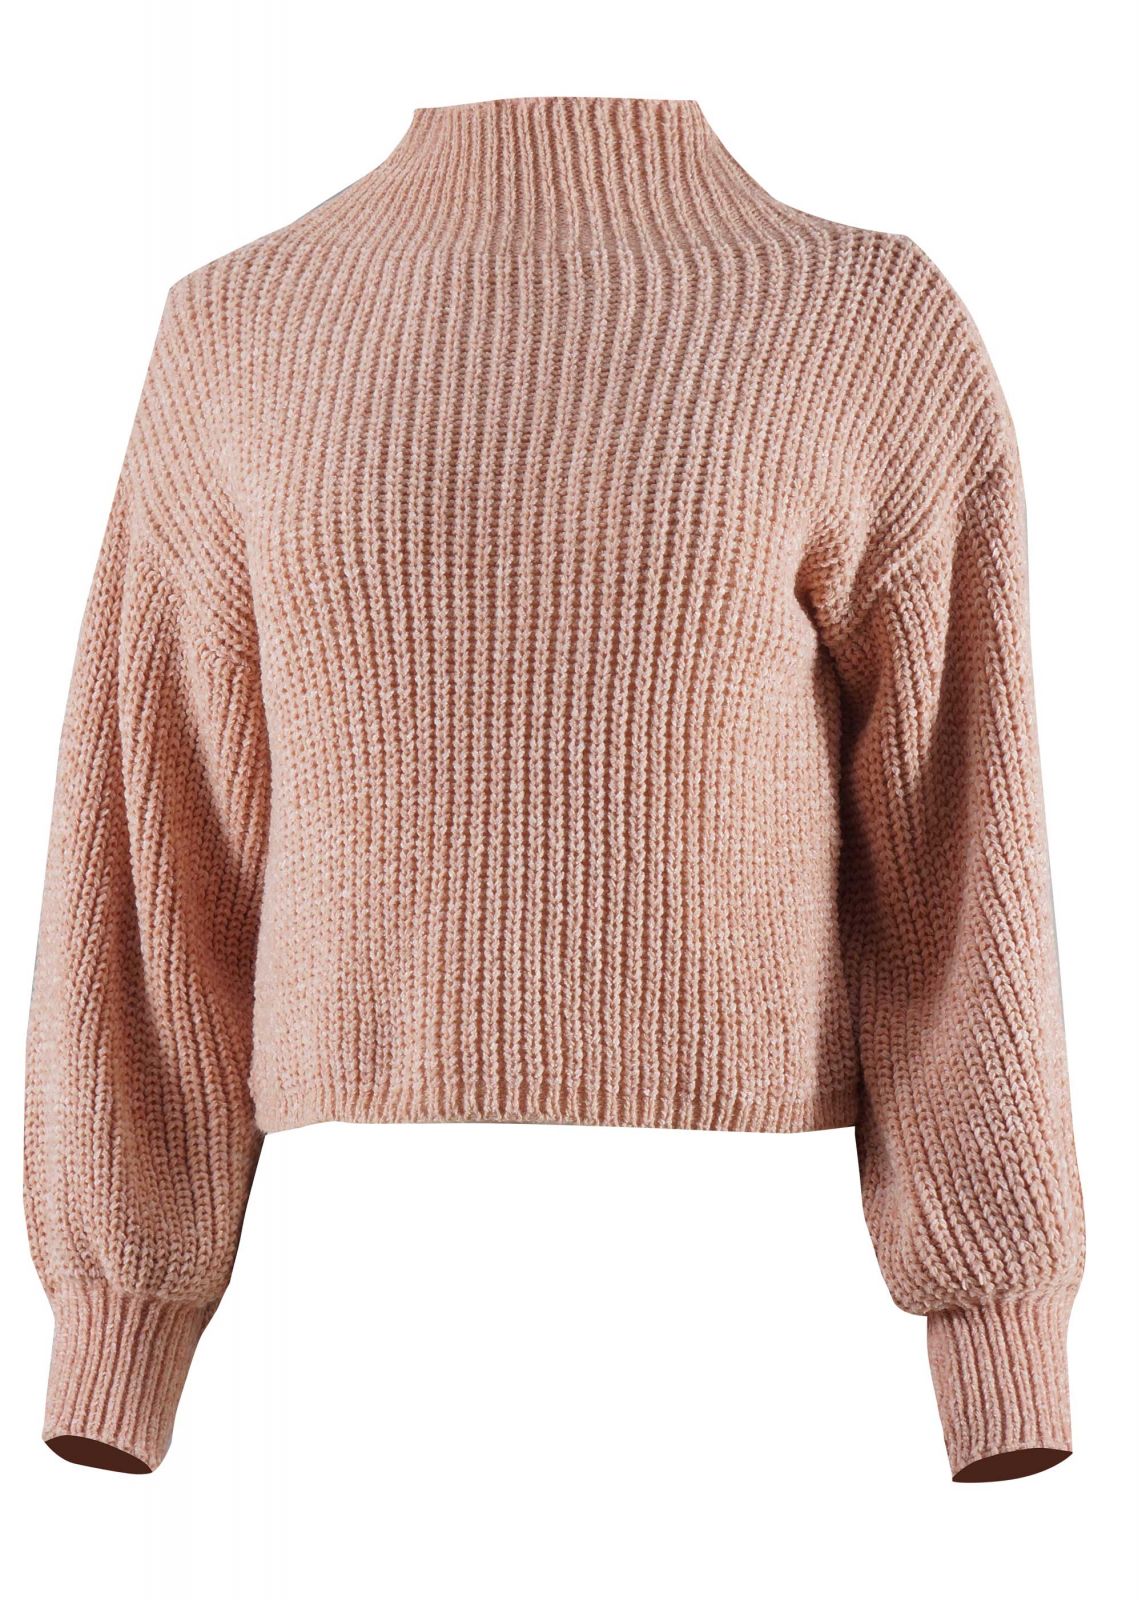 Γυναικείο πουλόβερ ελαφρύ ζιβάγκο. Casual style